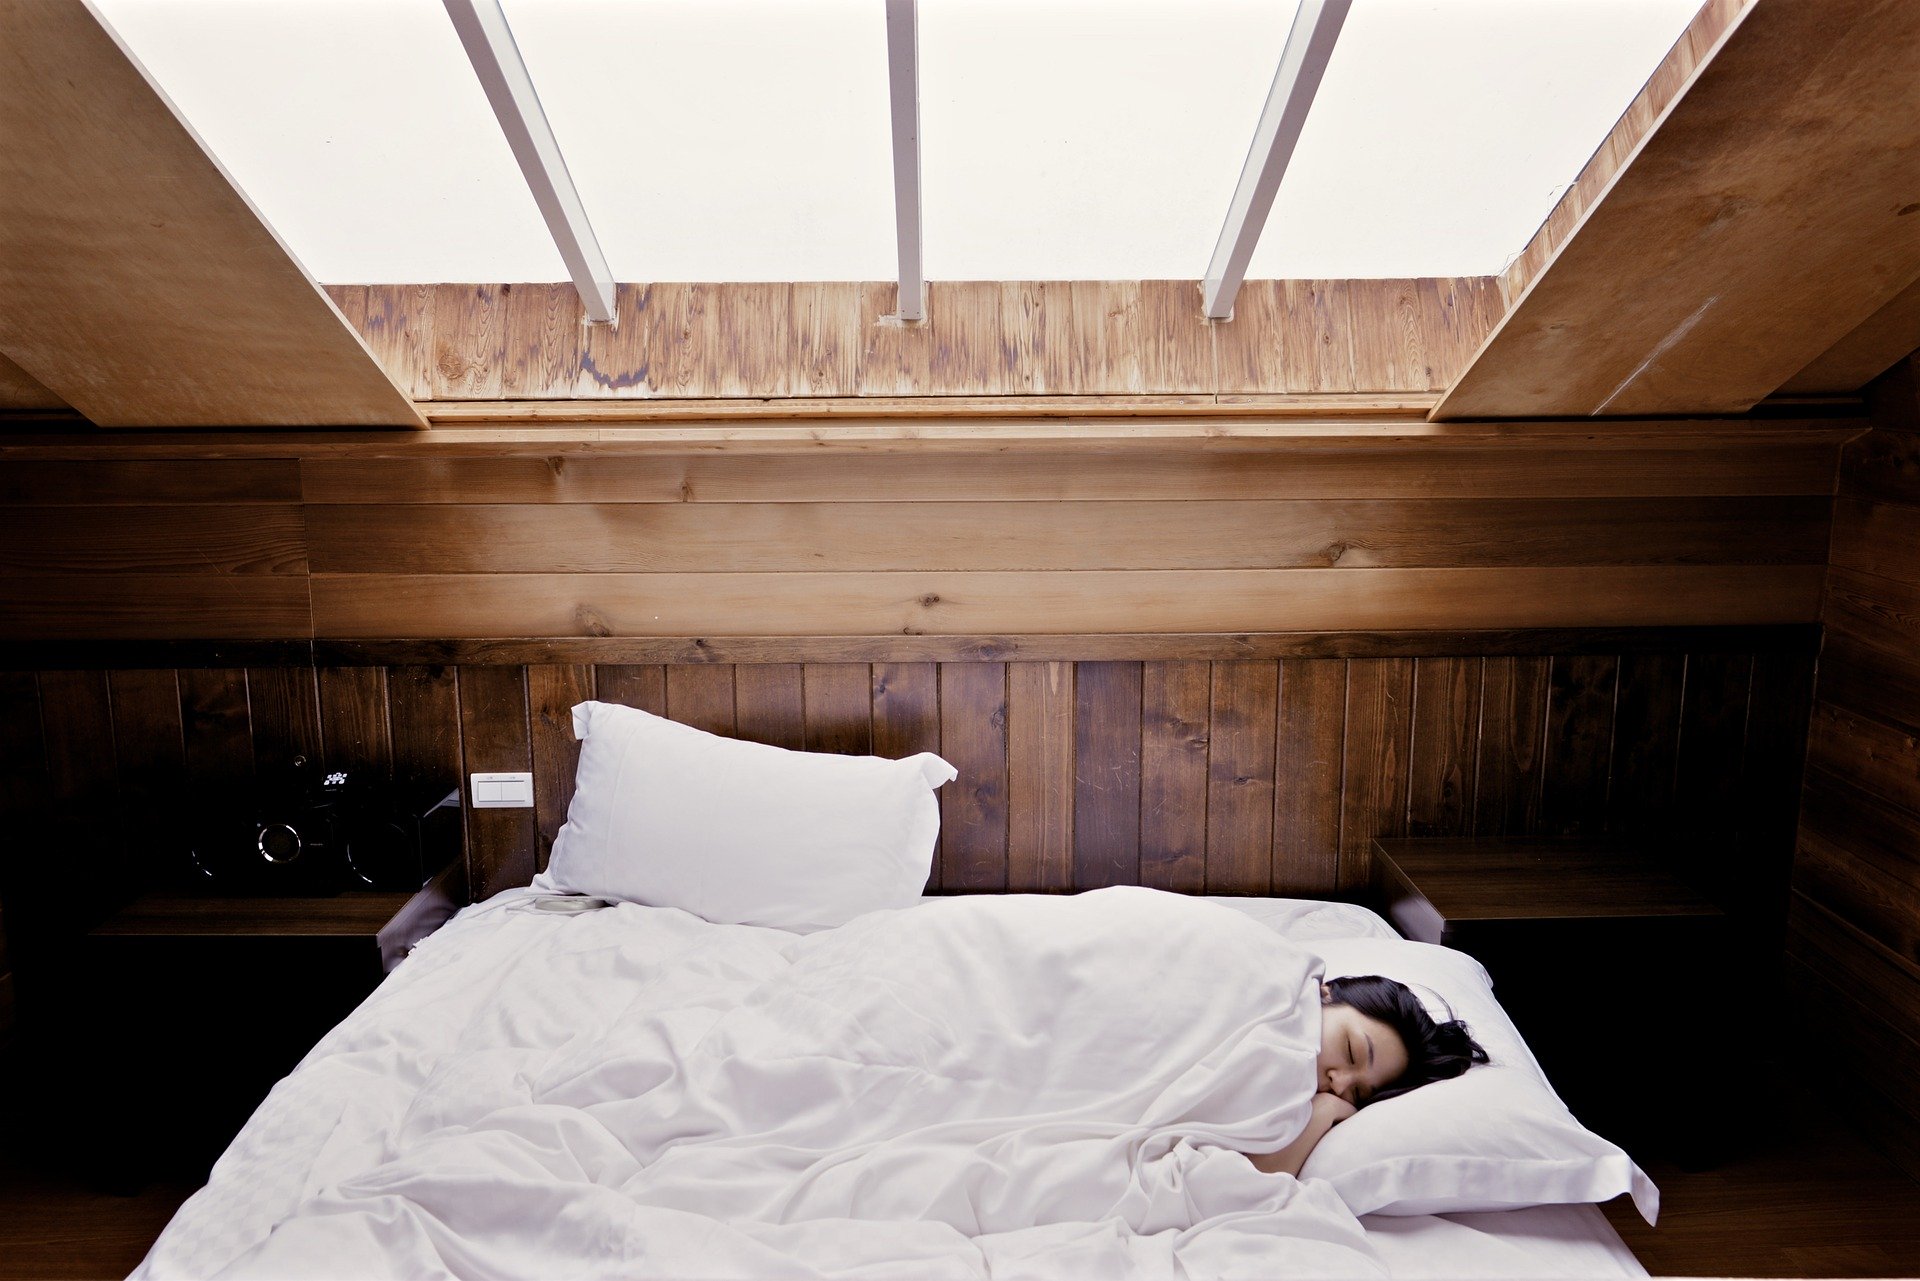 Frau schläft in weichem Bett in Raum aus Holz